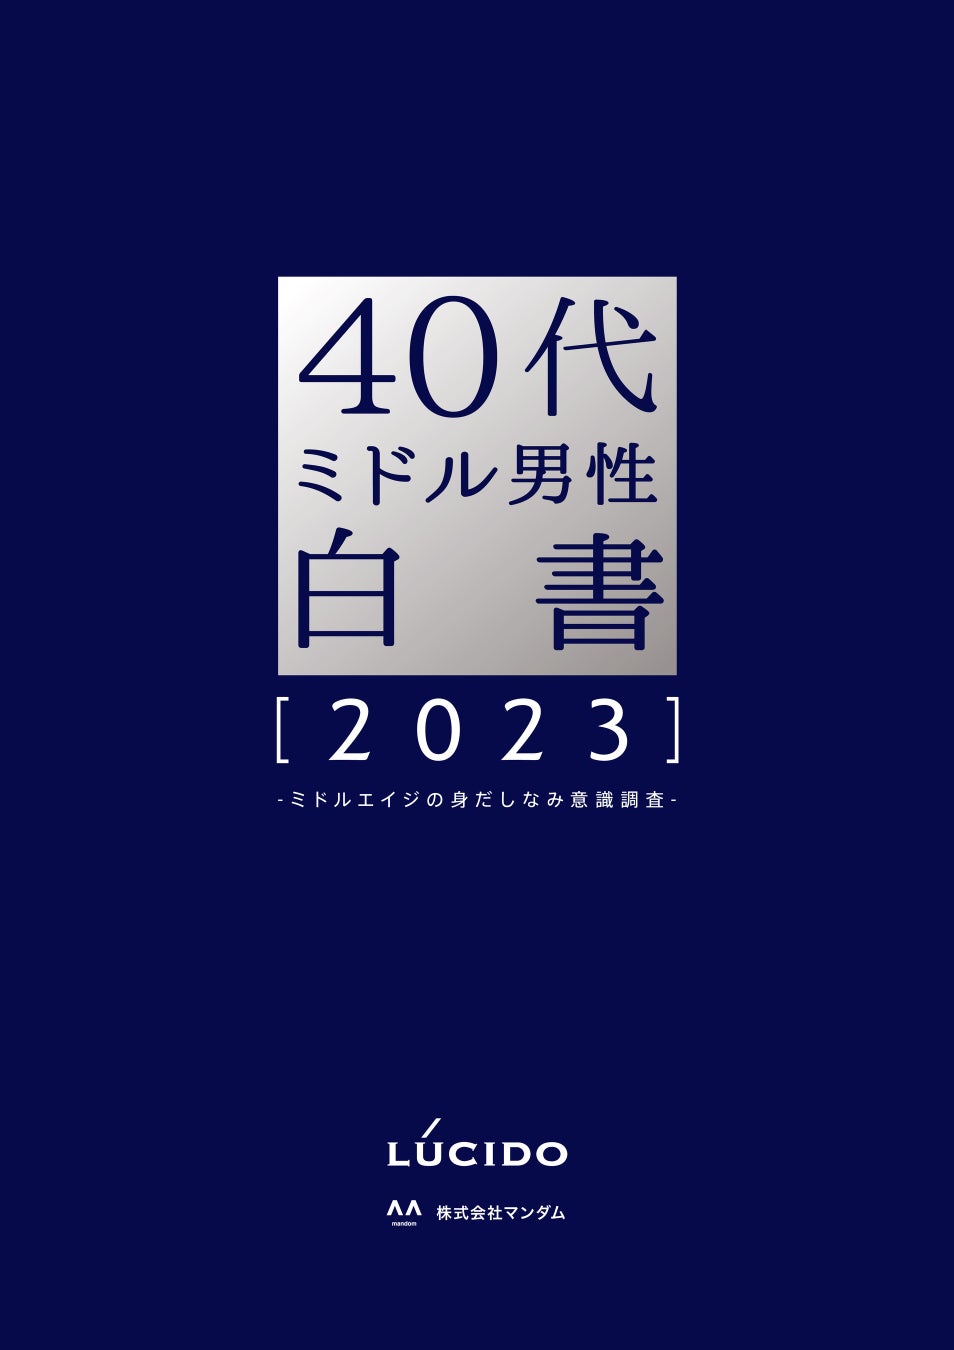 過去最多 800社を超える出展　第25回「ビューティーワールド ジャパン 東京」